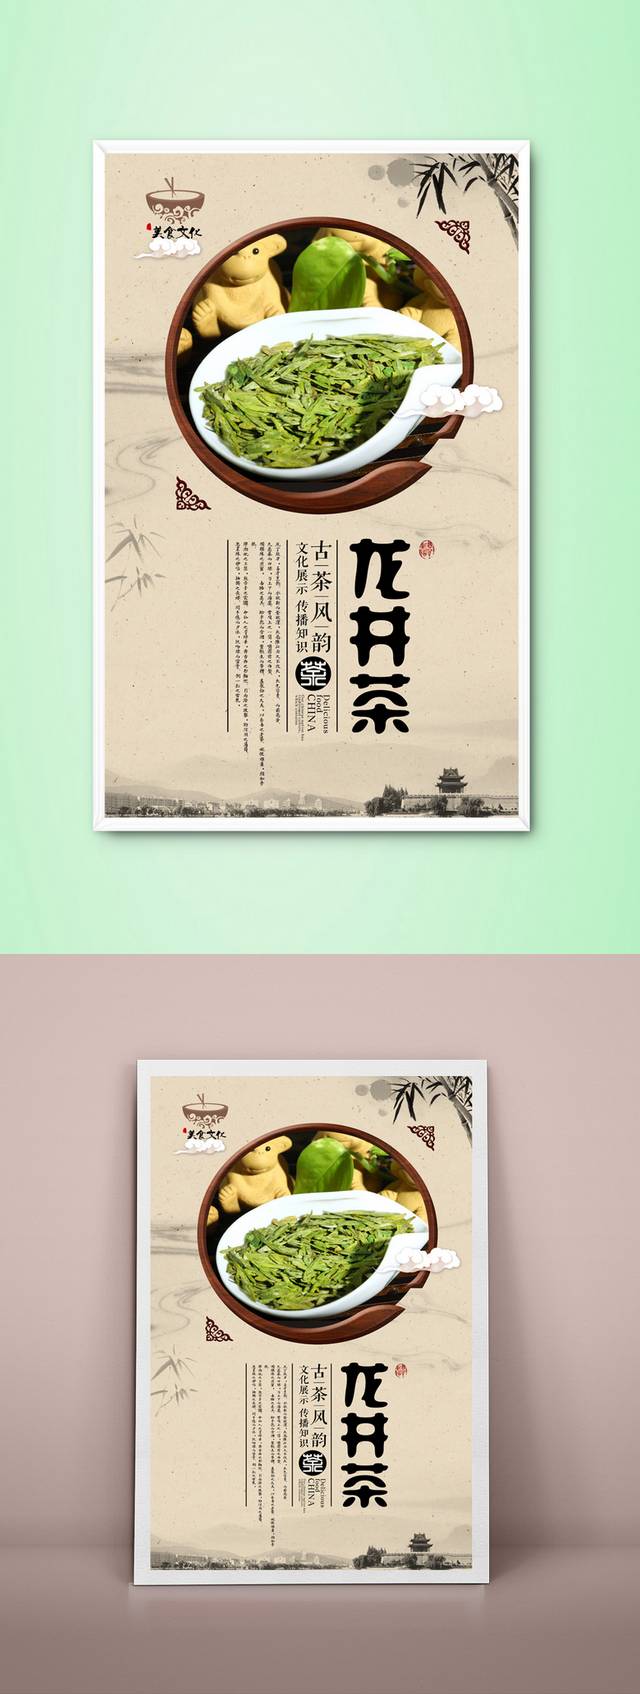 经典中国风龙井茶文化海报设计